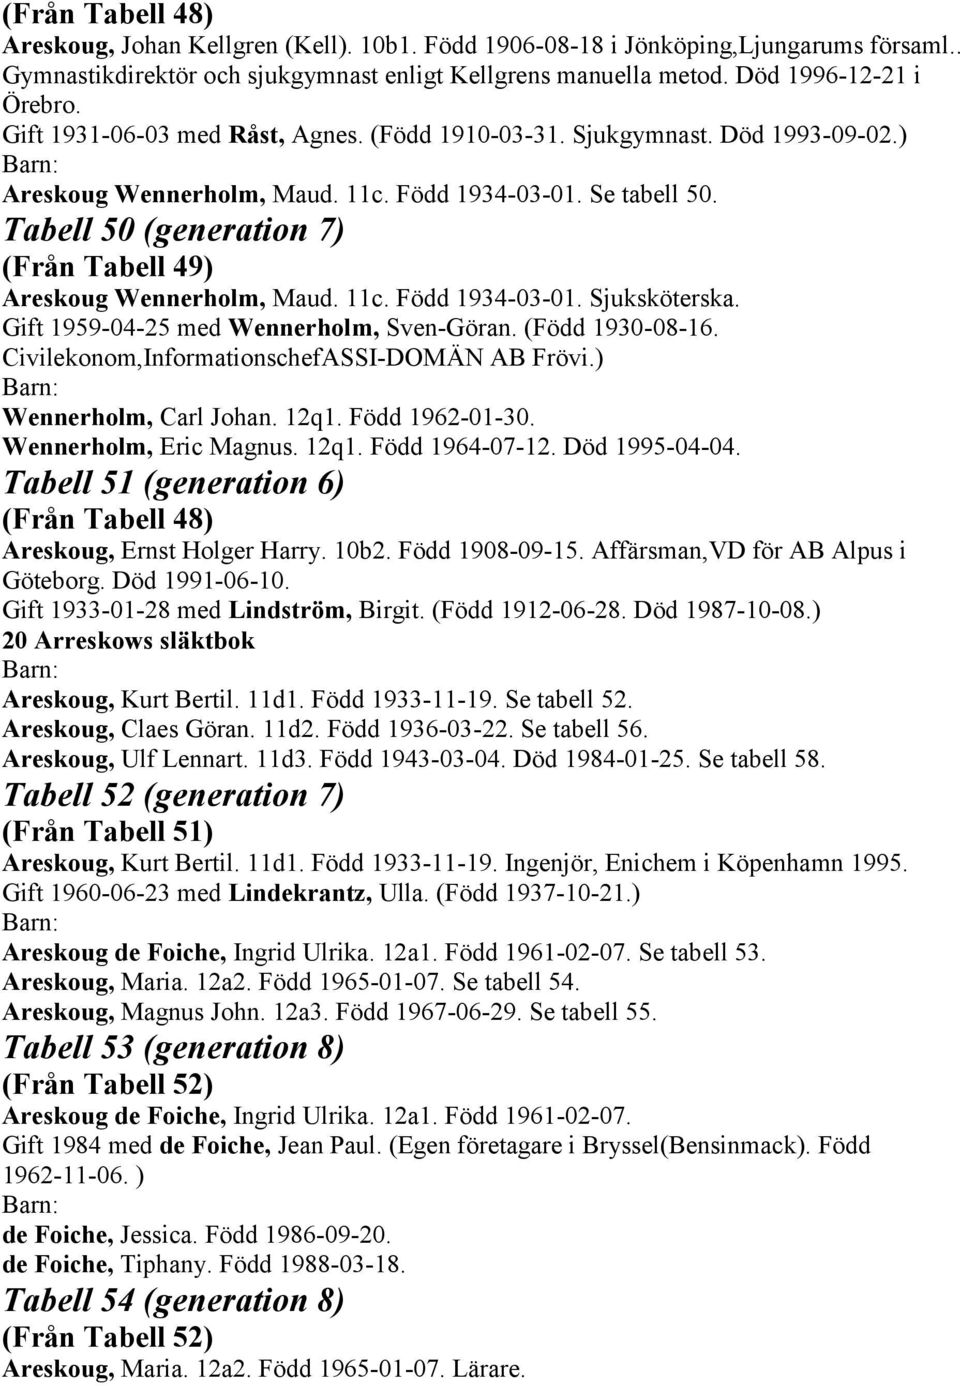 Tabell 50 (generation 7) (Från Tabell 49) Areskoug Wennerholm, Maud. 11c. Född 1934-03-01. Sjuksköterska. Gift 1959-04-25 med Wennerholm, Sven-Göran. (Född 1930-08-16.